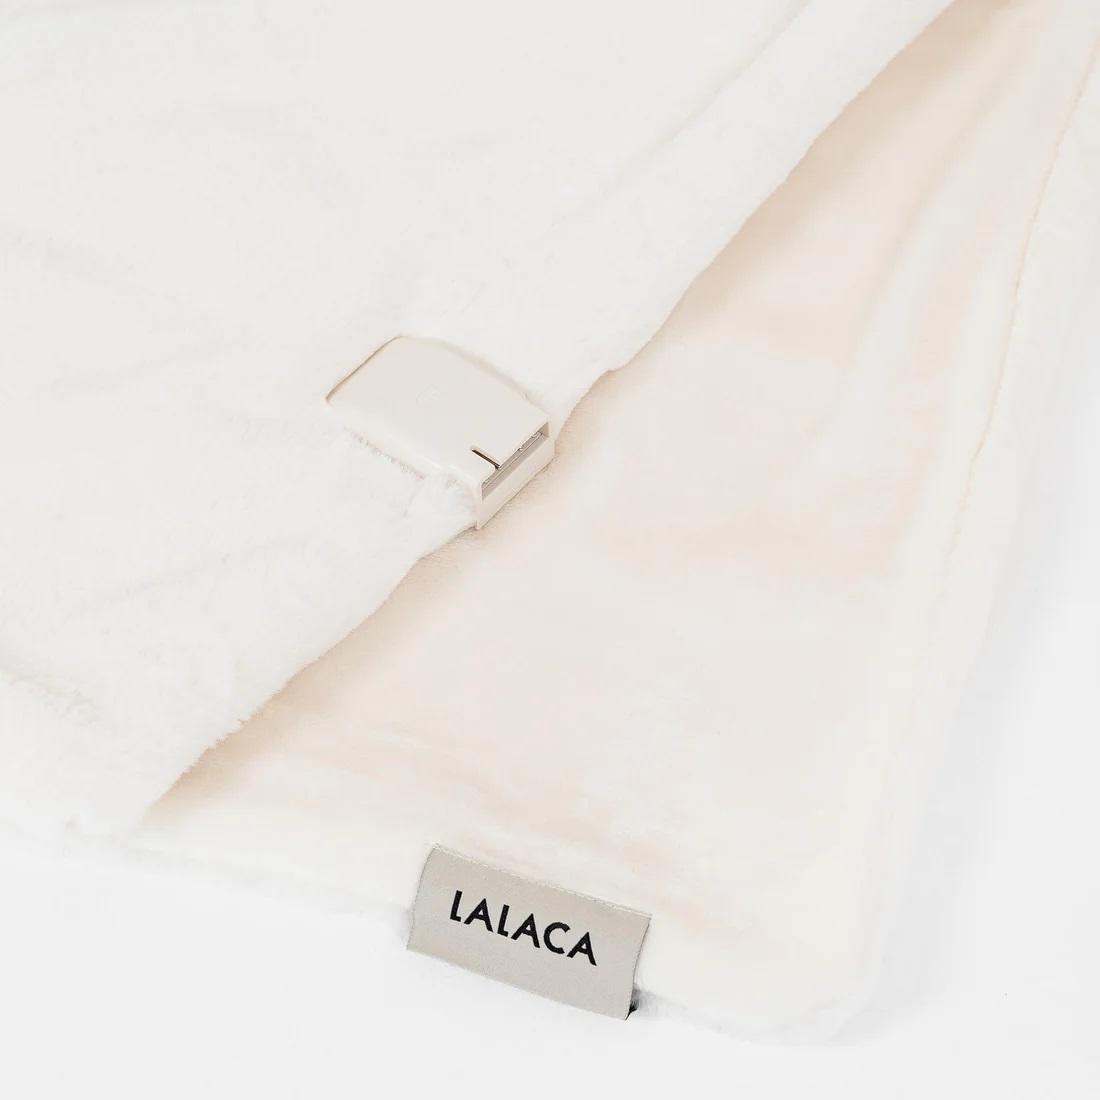 LALACA(ララカ) heated blanket(ブランケット) lounge 2color